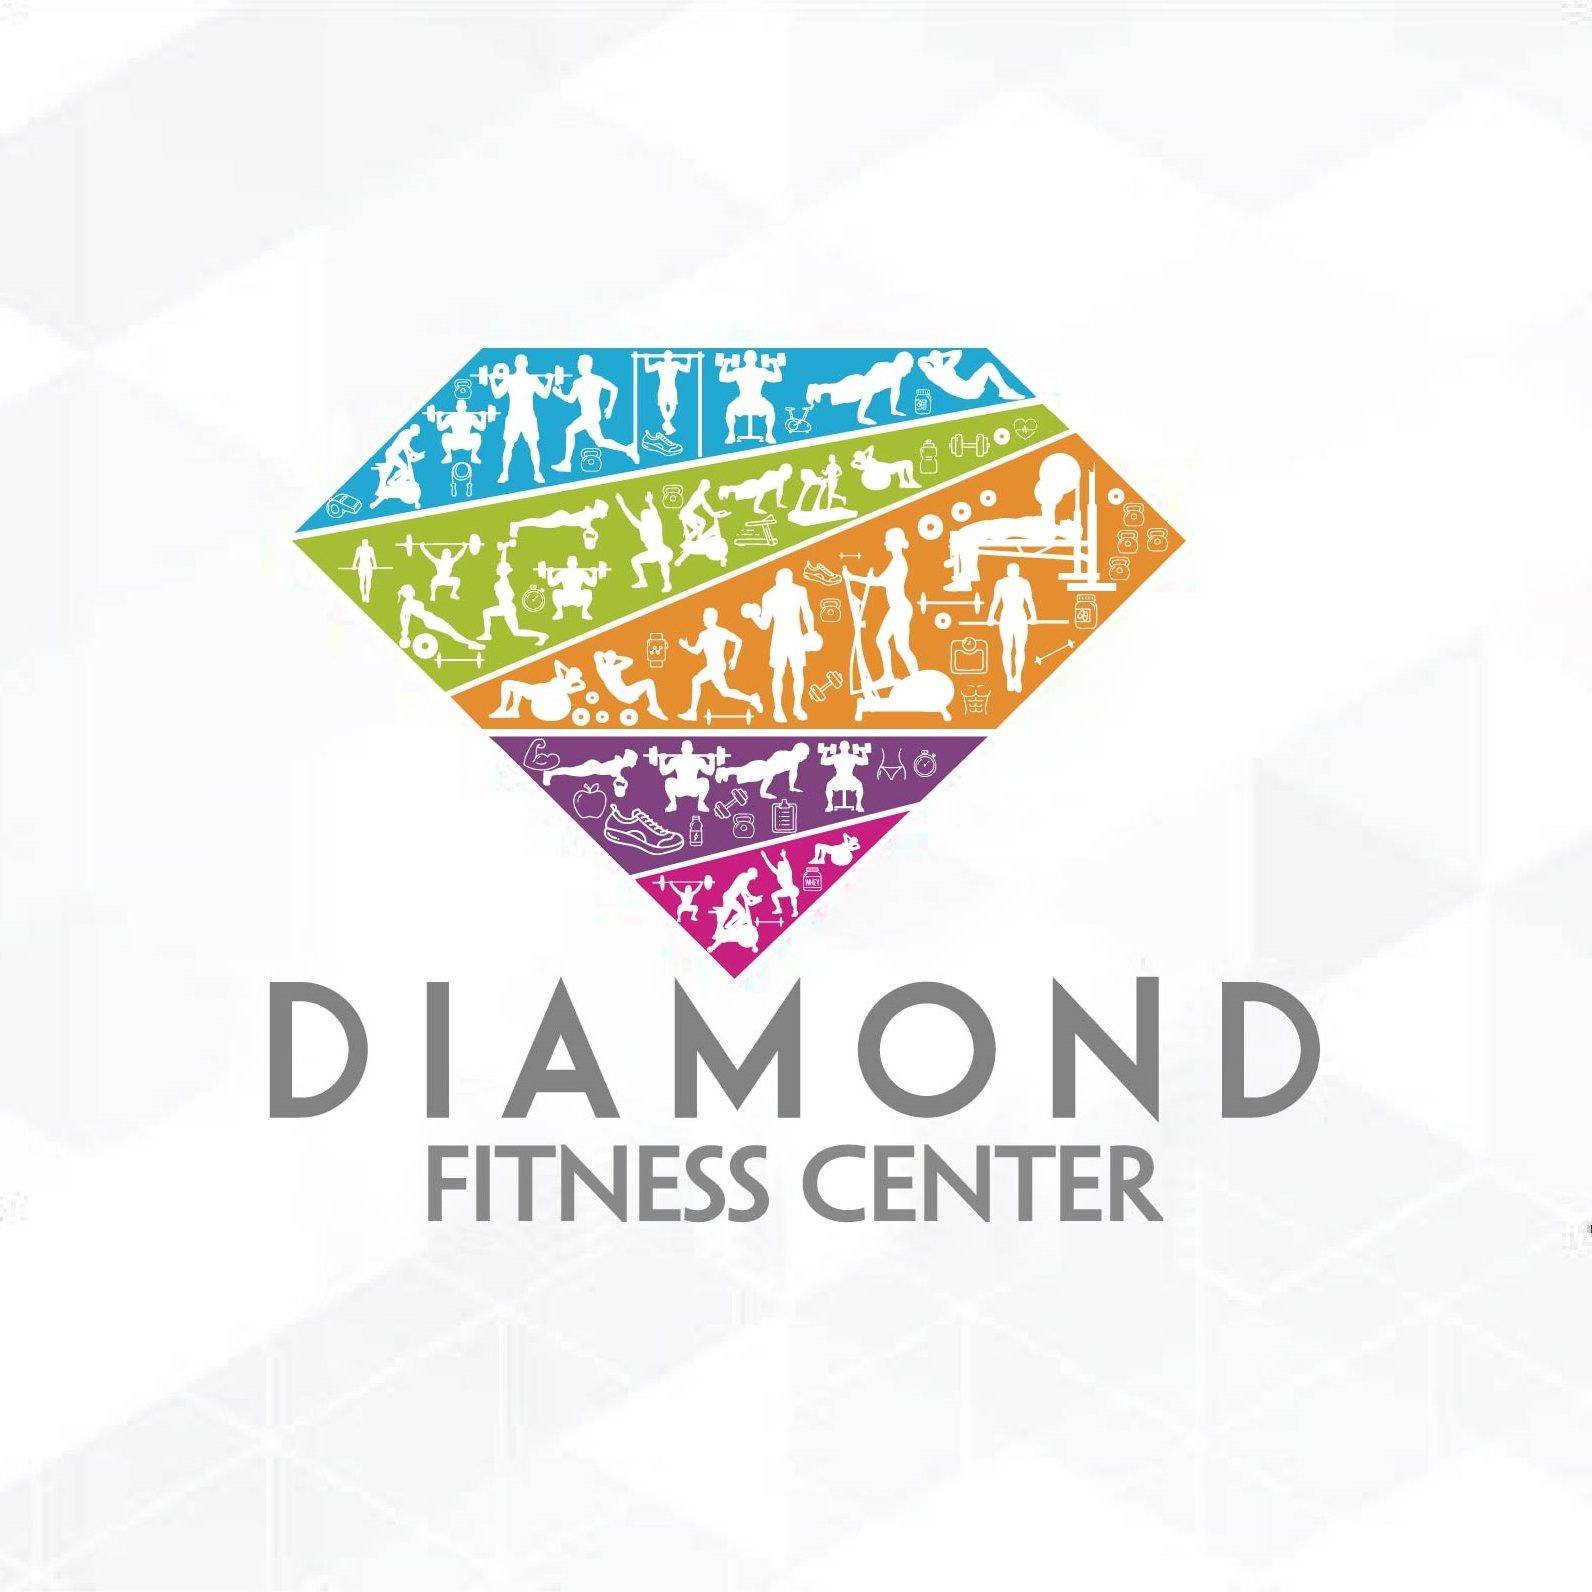 Diamond Fitness Center Lương Khánh Thiện